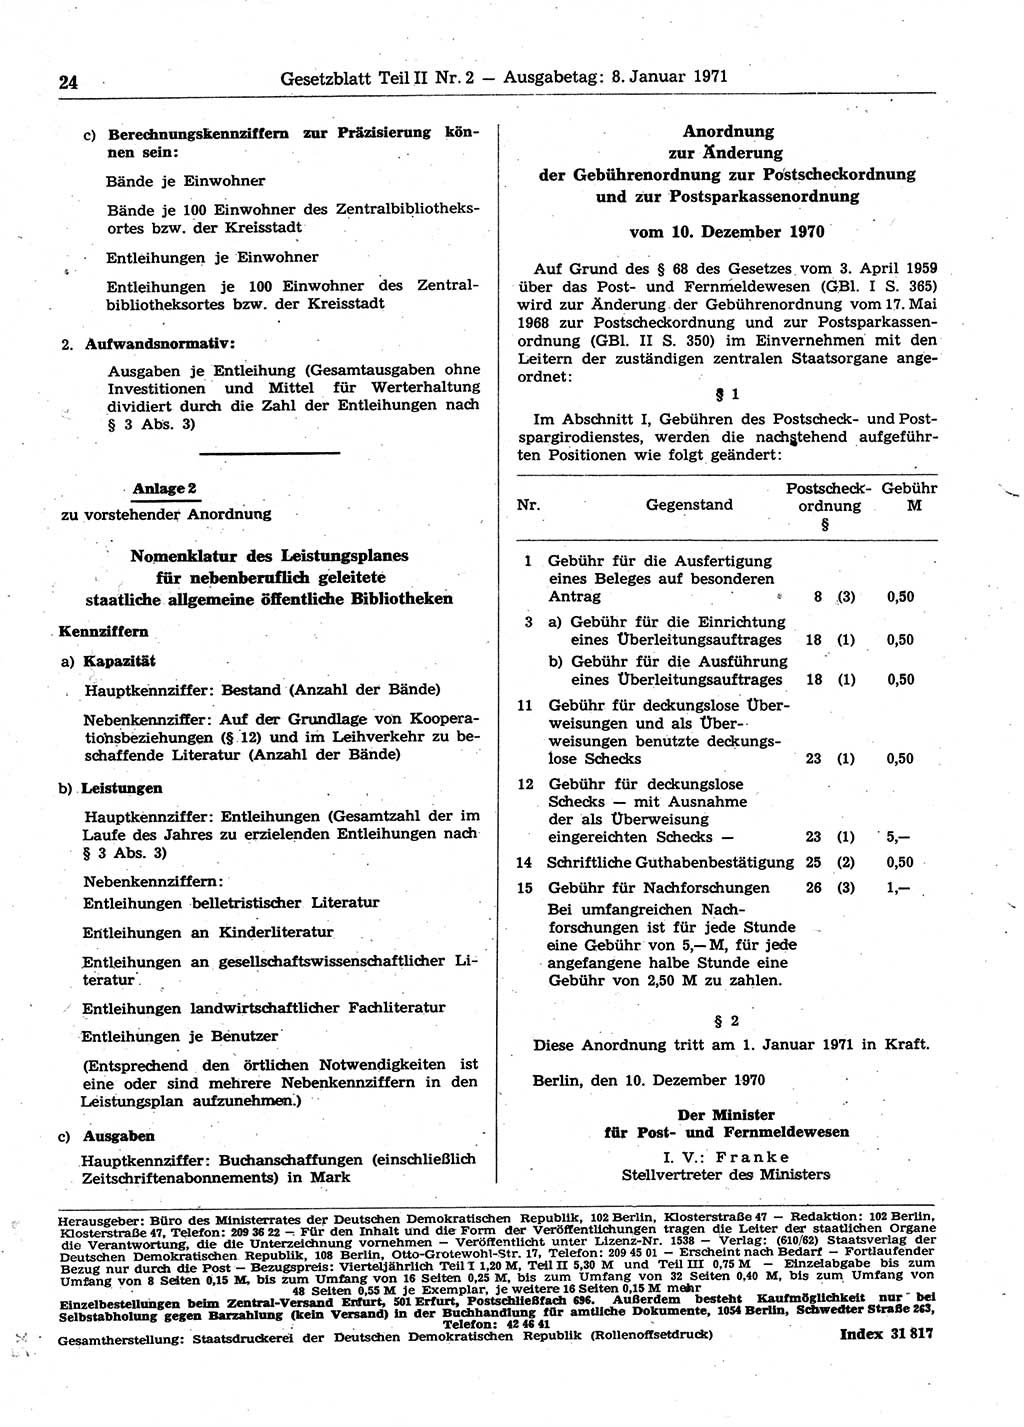 Gesetzblatt (GBl.) der Deutschen Demokratischen Republik (DDR) Teil ⅠⅠ 1971, Seite 24 (GBl. DDR ⅠⅠ 1971, S. 24)